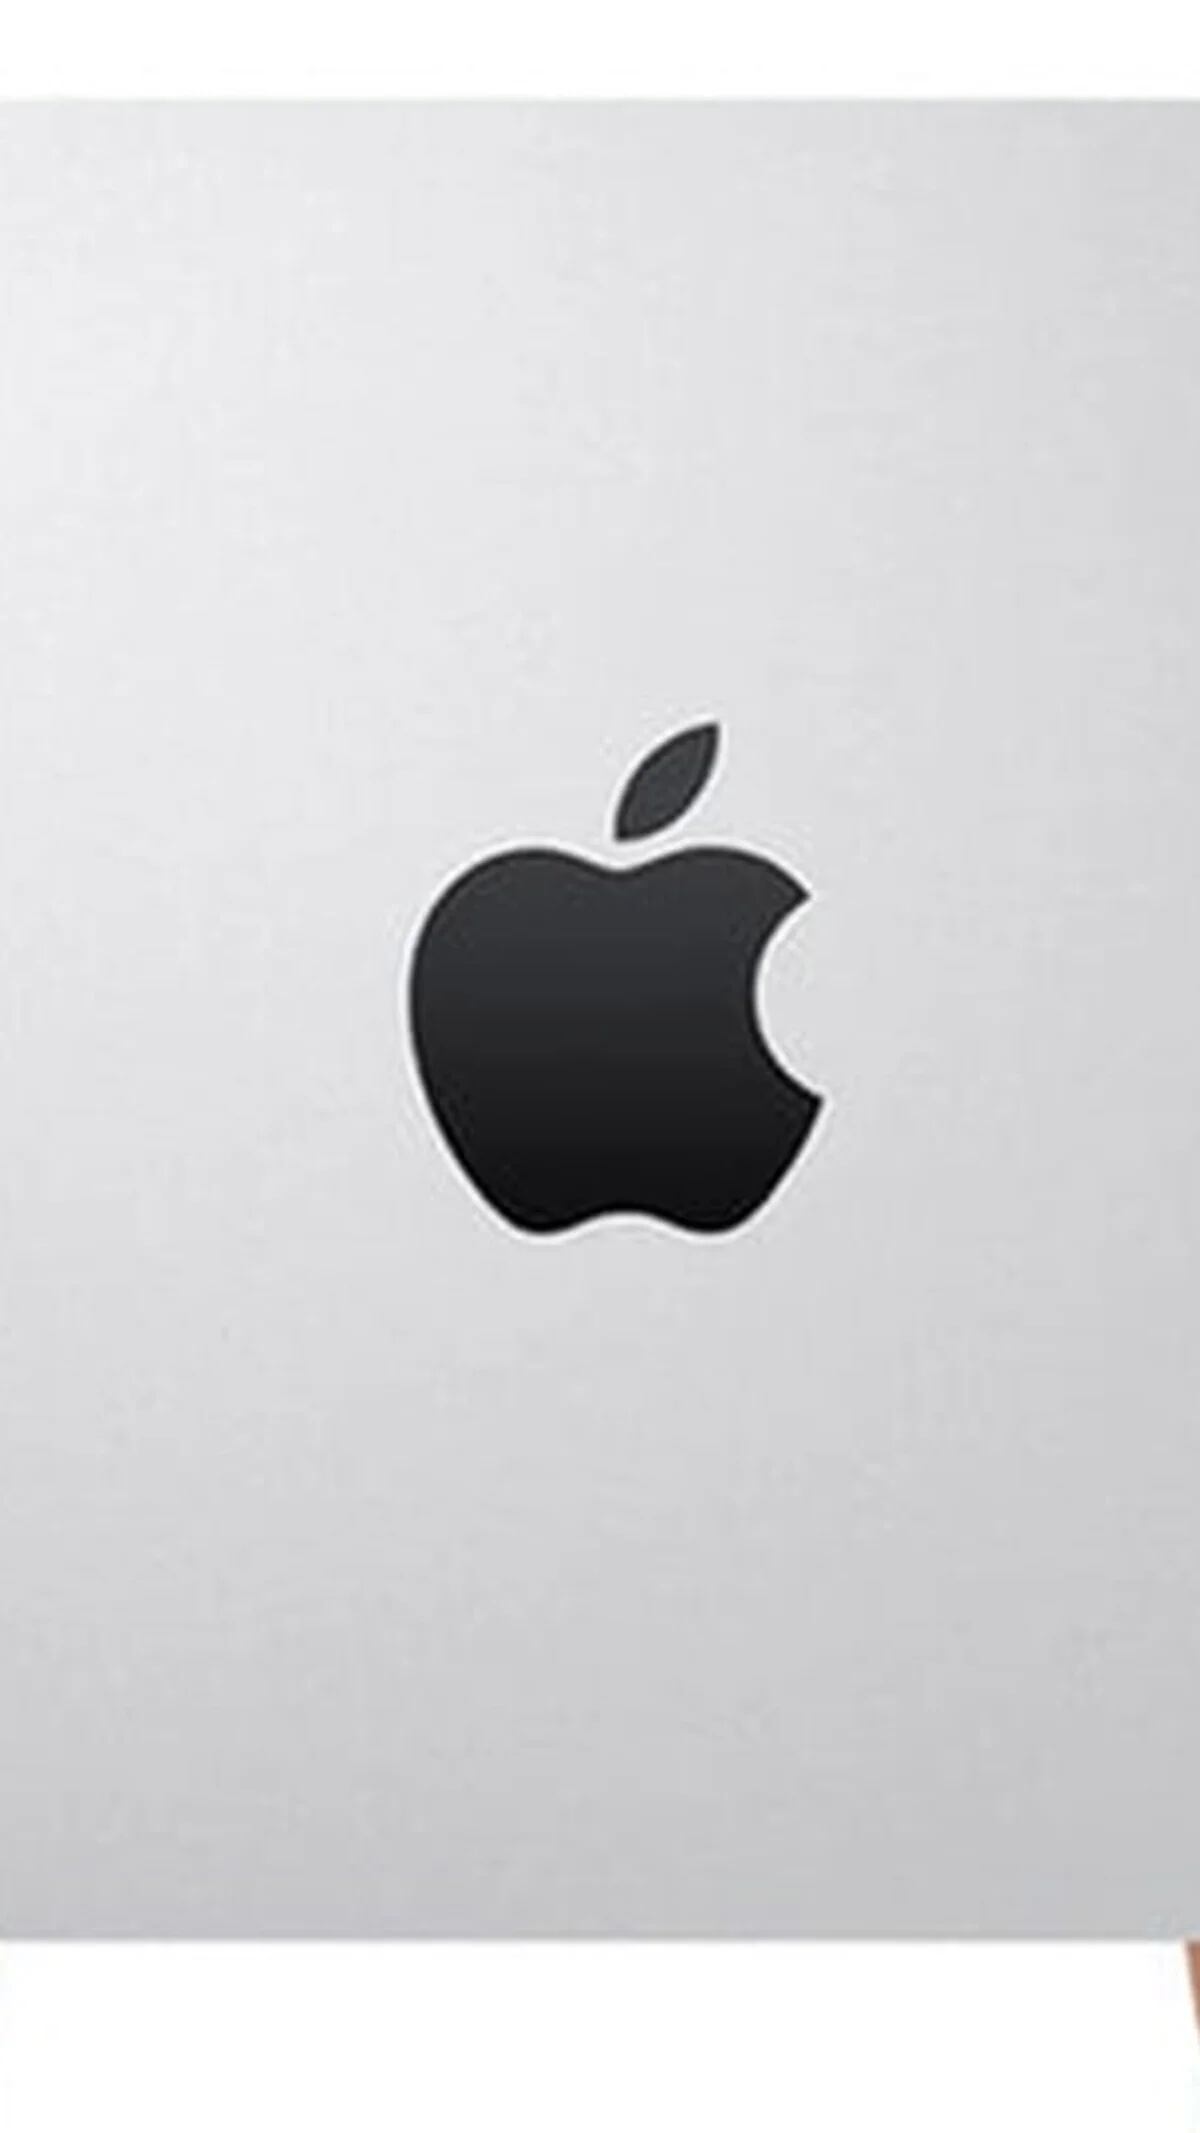 Apple discontinua el iPhone Mini allanando el camino de las pantallas  grandes